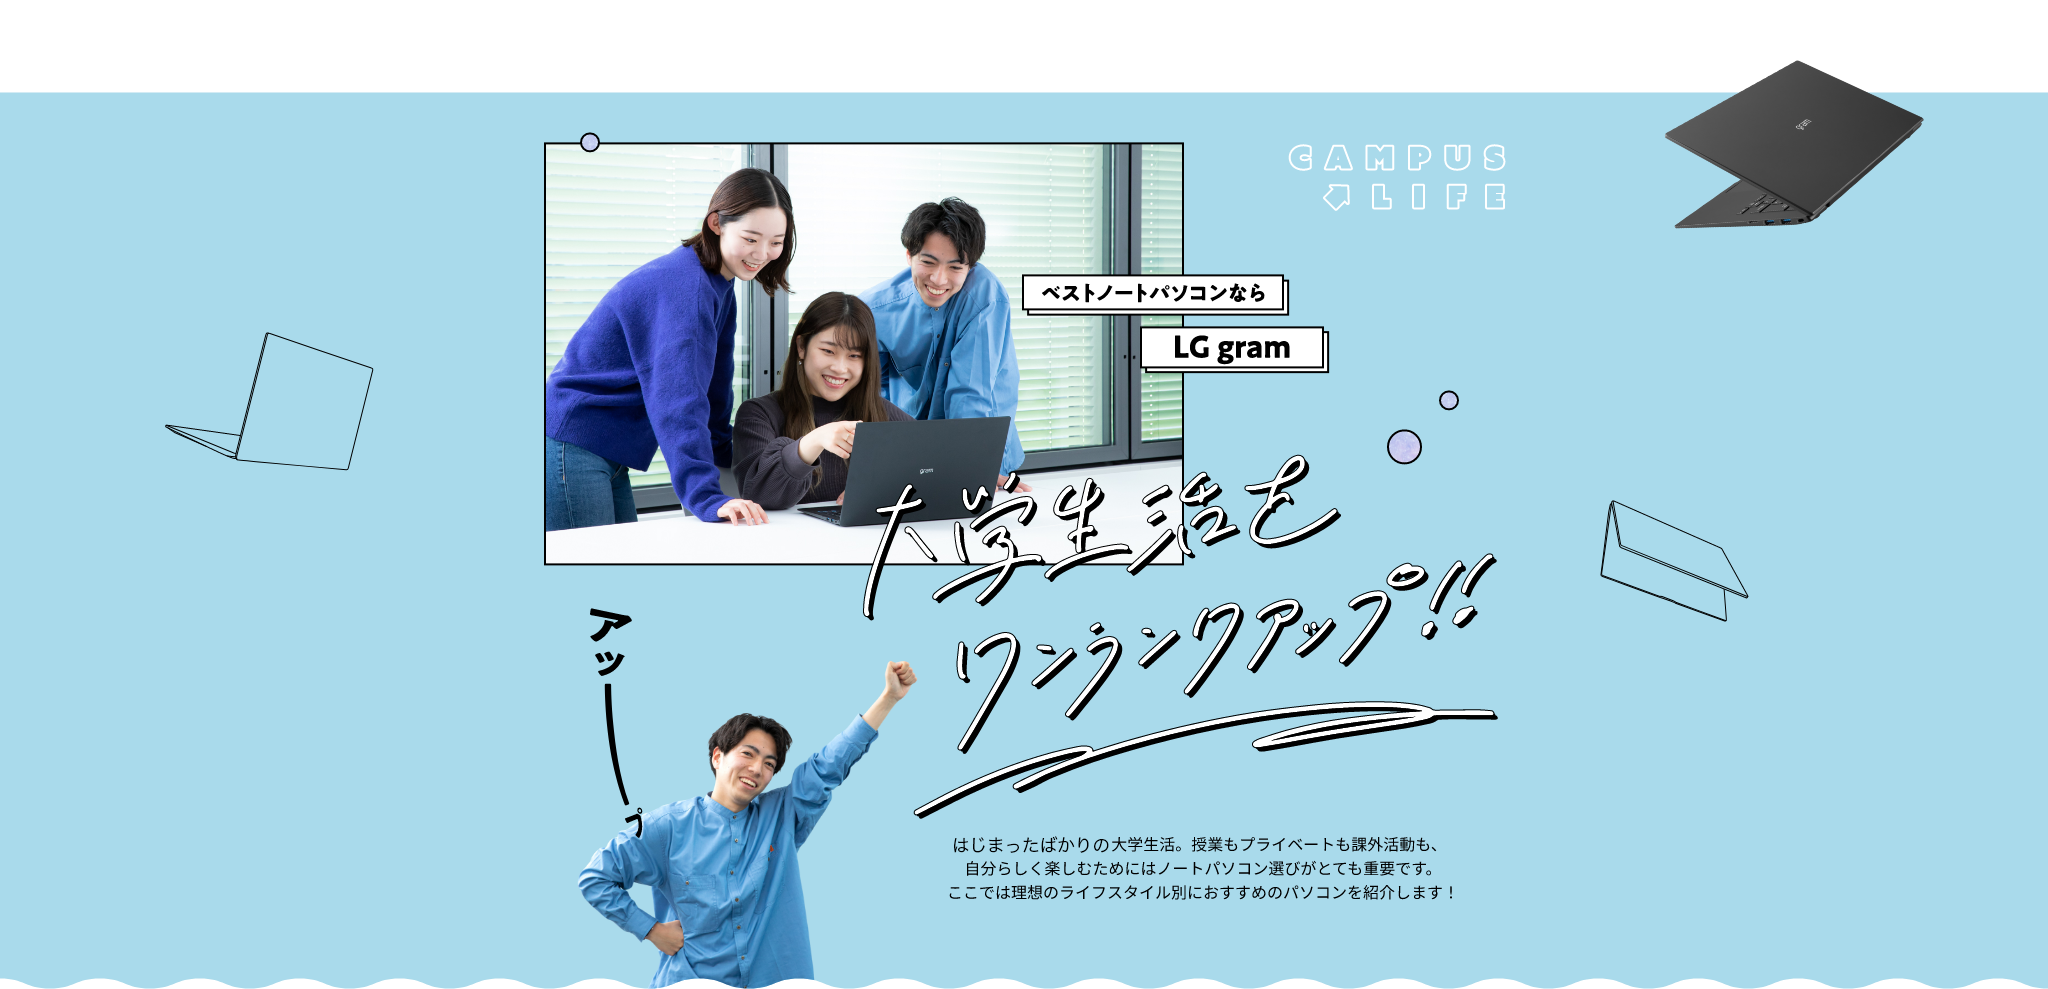 CAMPUS LIFE ベストノートパソコンなら LGgram 大学生活を ワンランクアップ!!